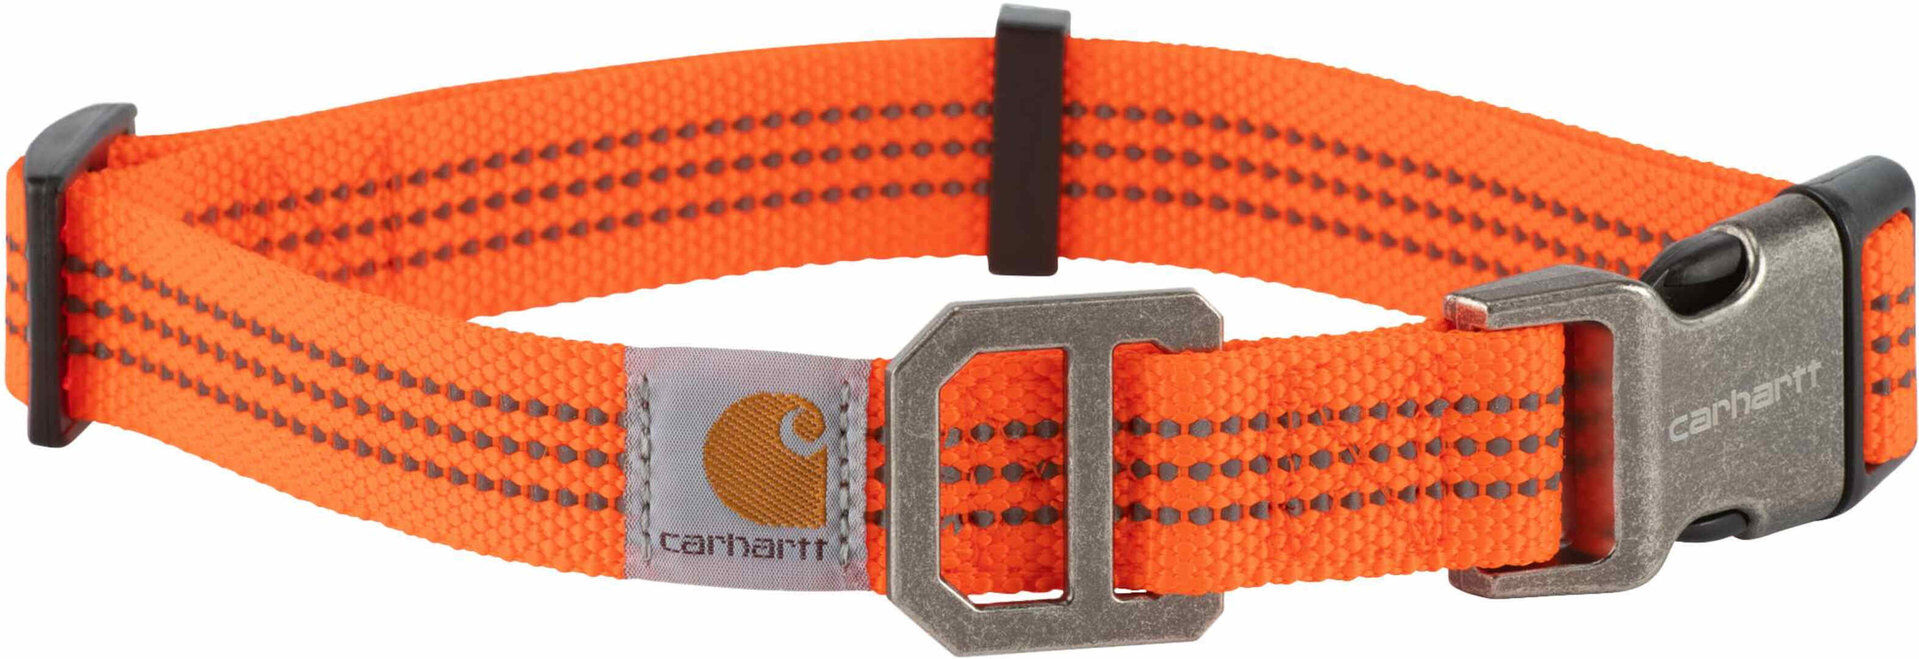 Carhartt Tradesman Collar - Naranja (M)